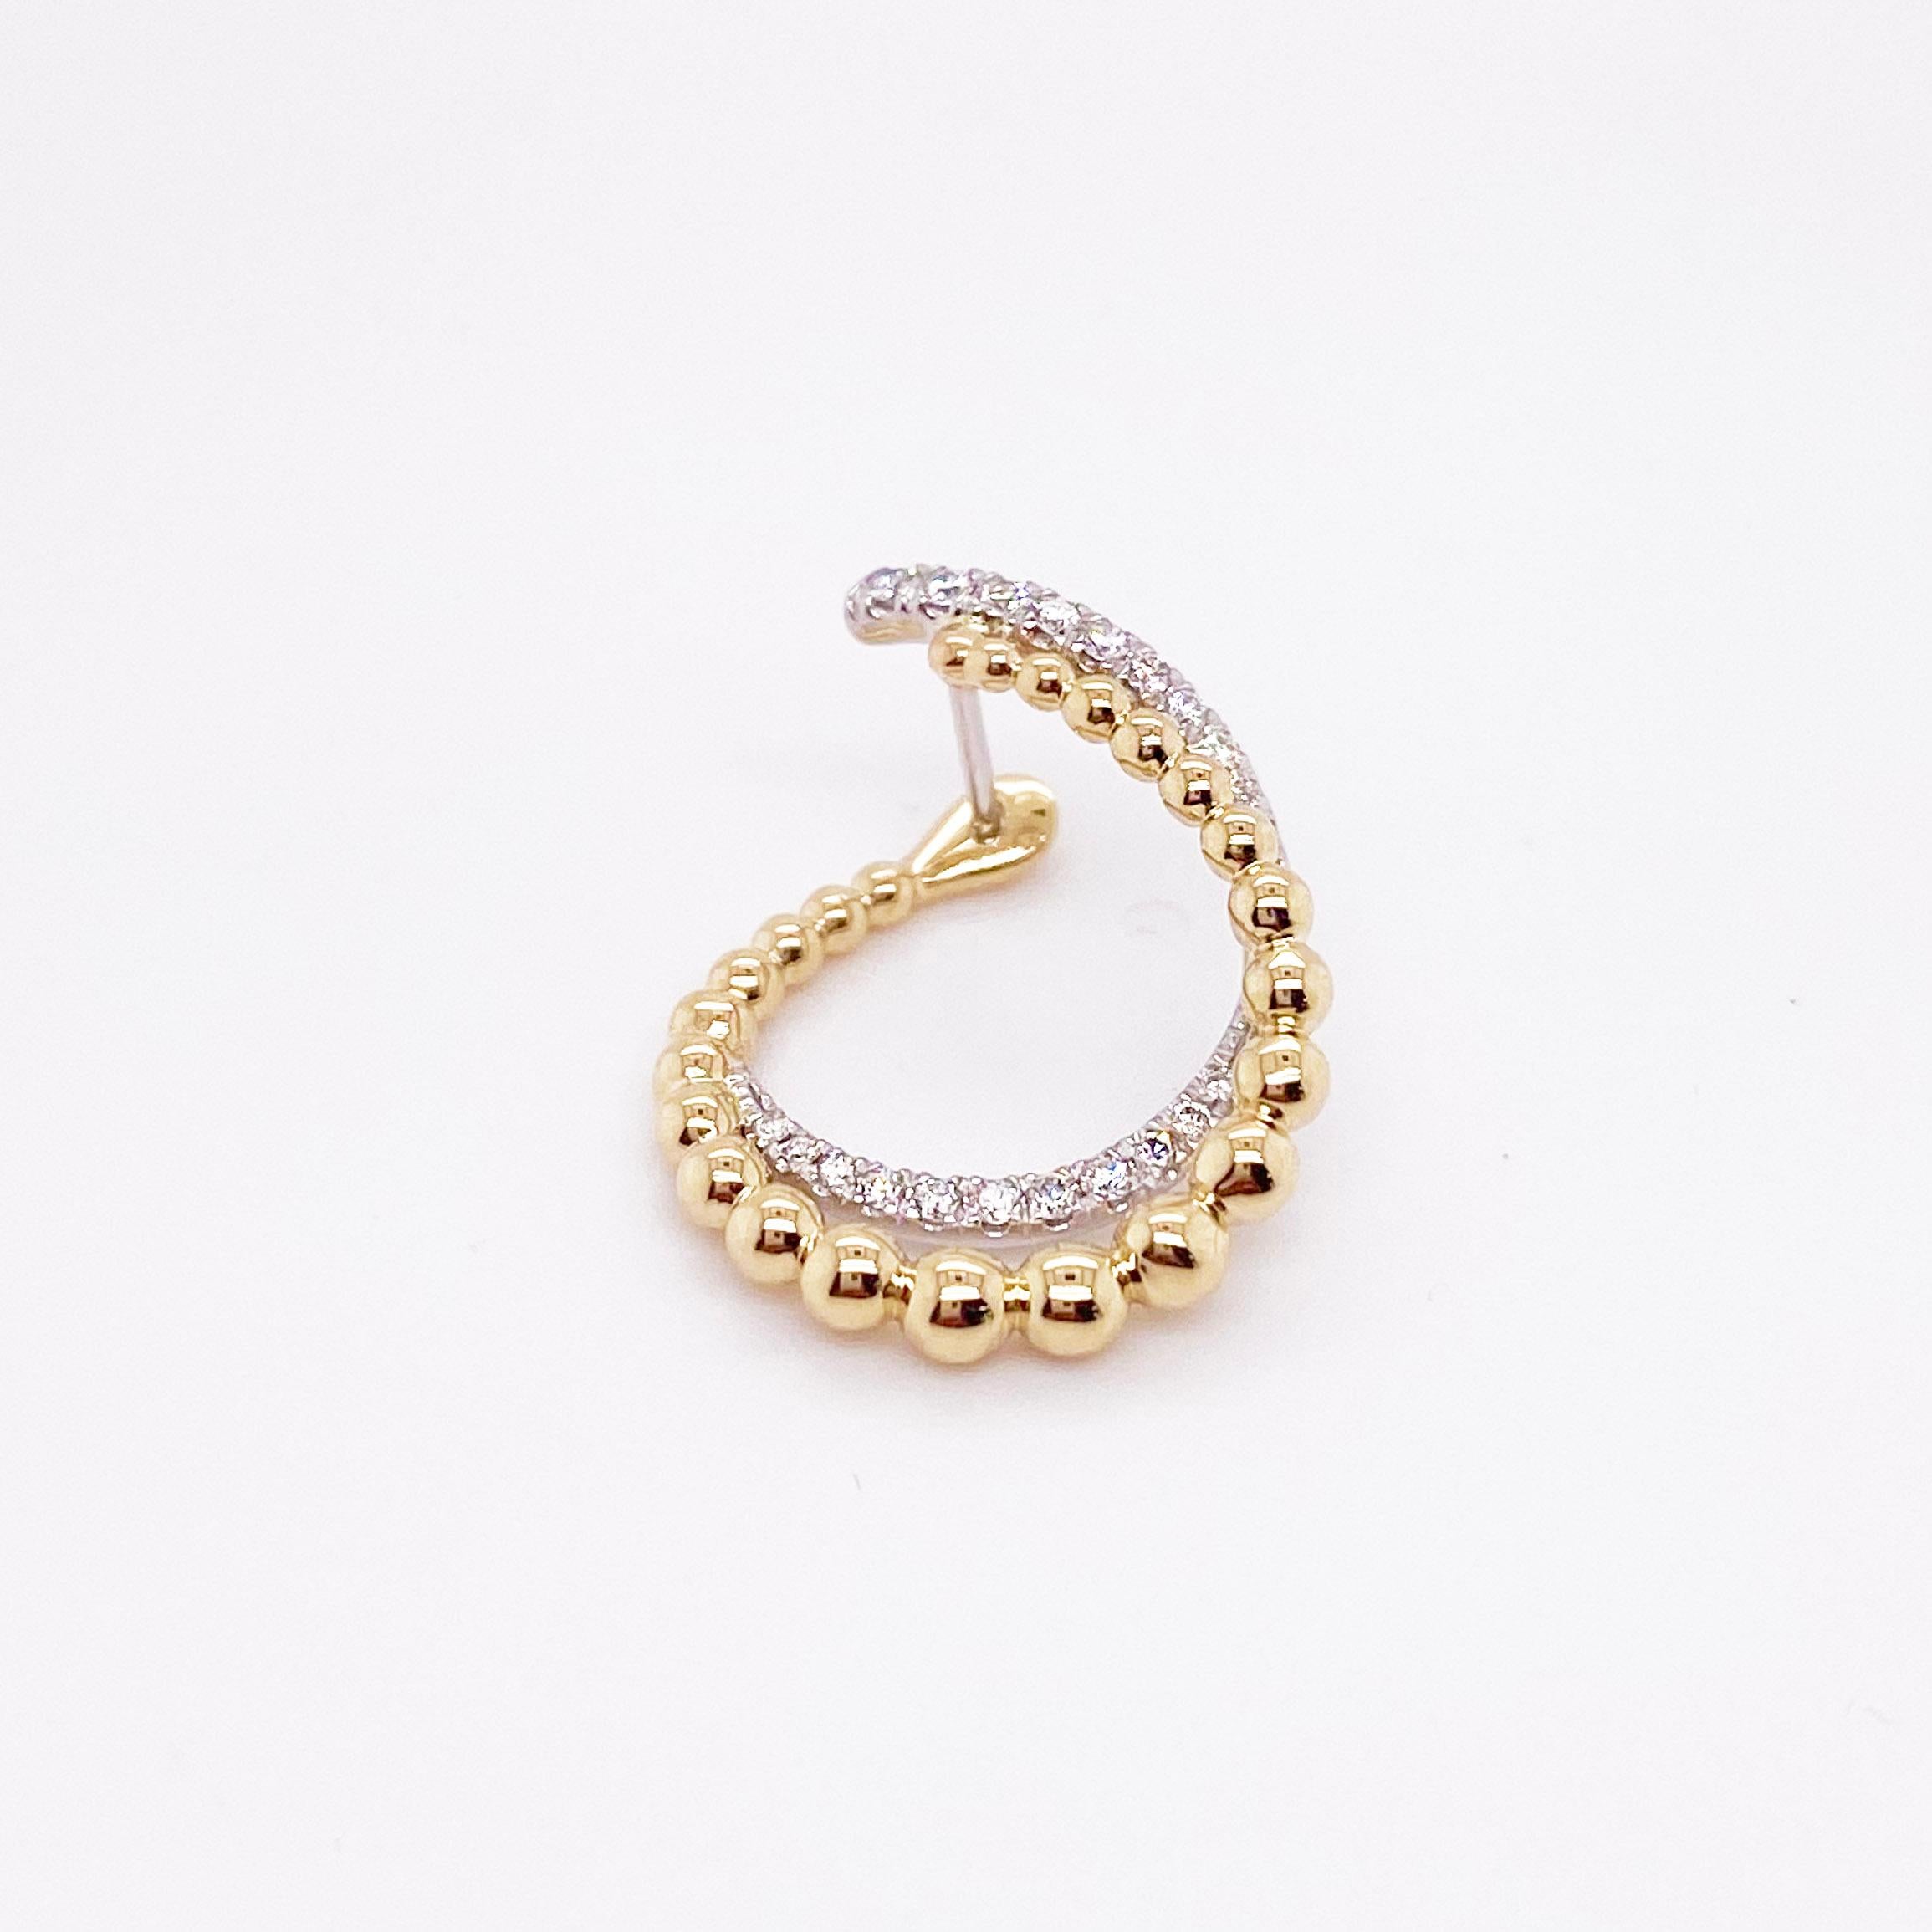 Die lustigen, modernen Ohrringe haben ein einzigartiges Design mit einer goldenen Perlenstruktur und strahlend weißen Diamanten! Das Design scheint in Bewegung zu sein, denn die Perlenreihe und die Rauten wickeln sich gemeinsam im Kreis. Die